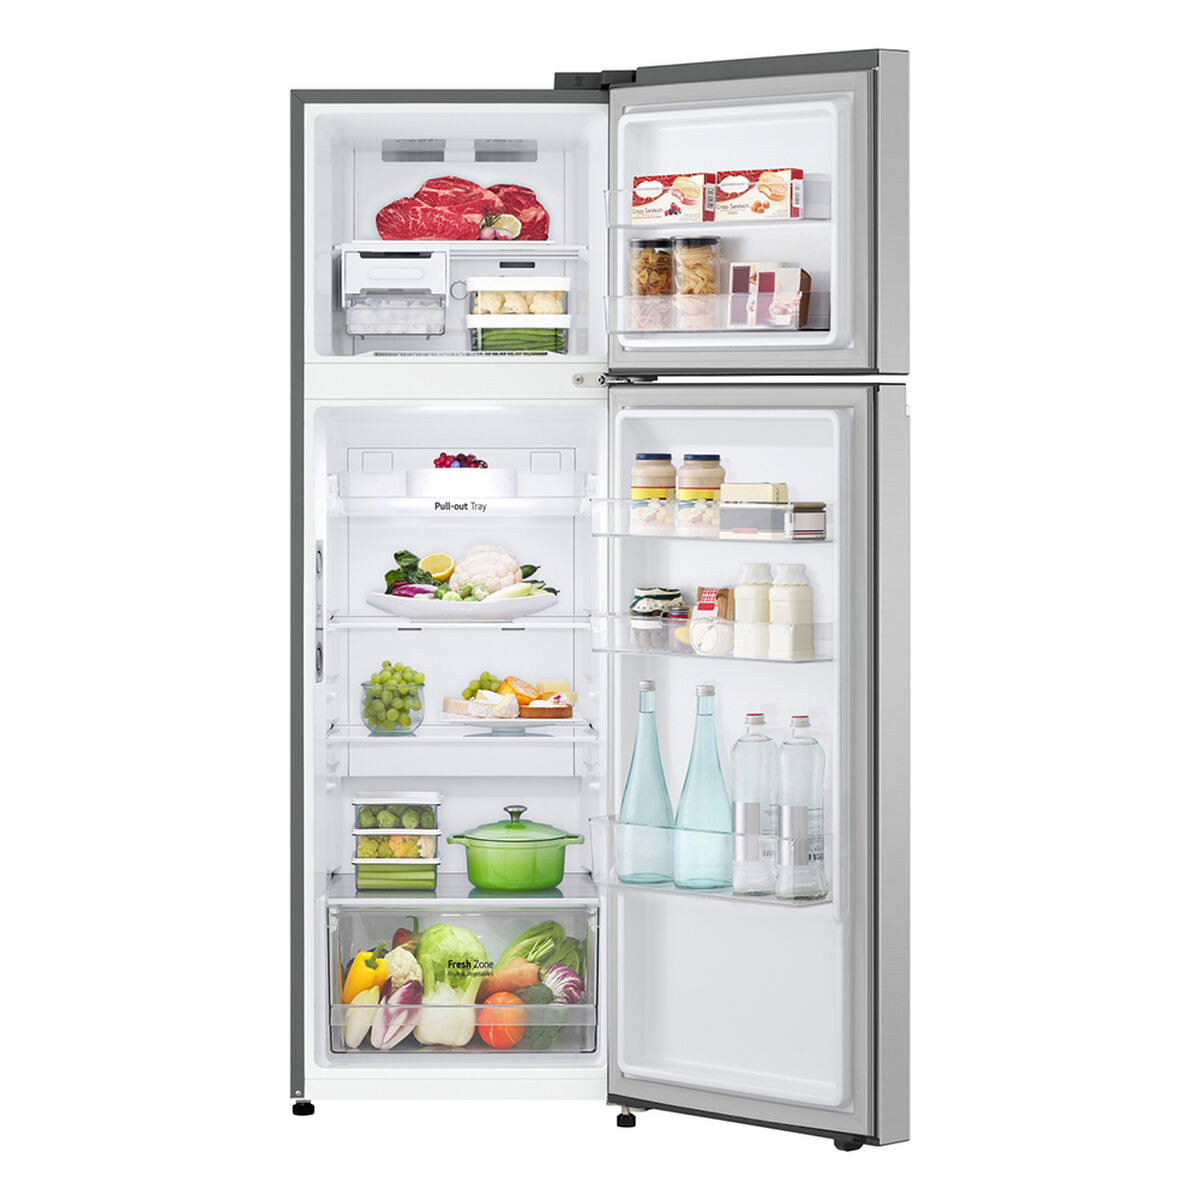 Refrigerador No Frost LG VT27BPP 264 lts.